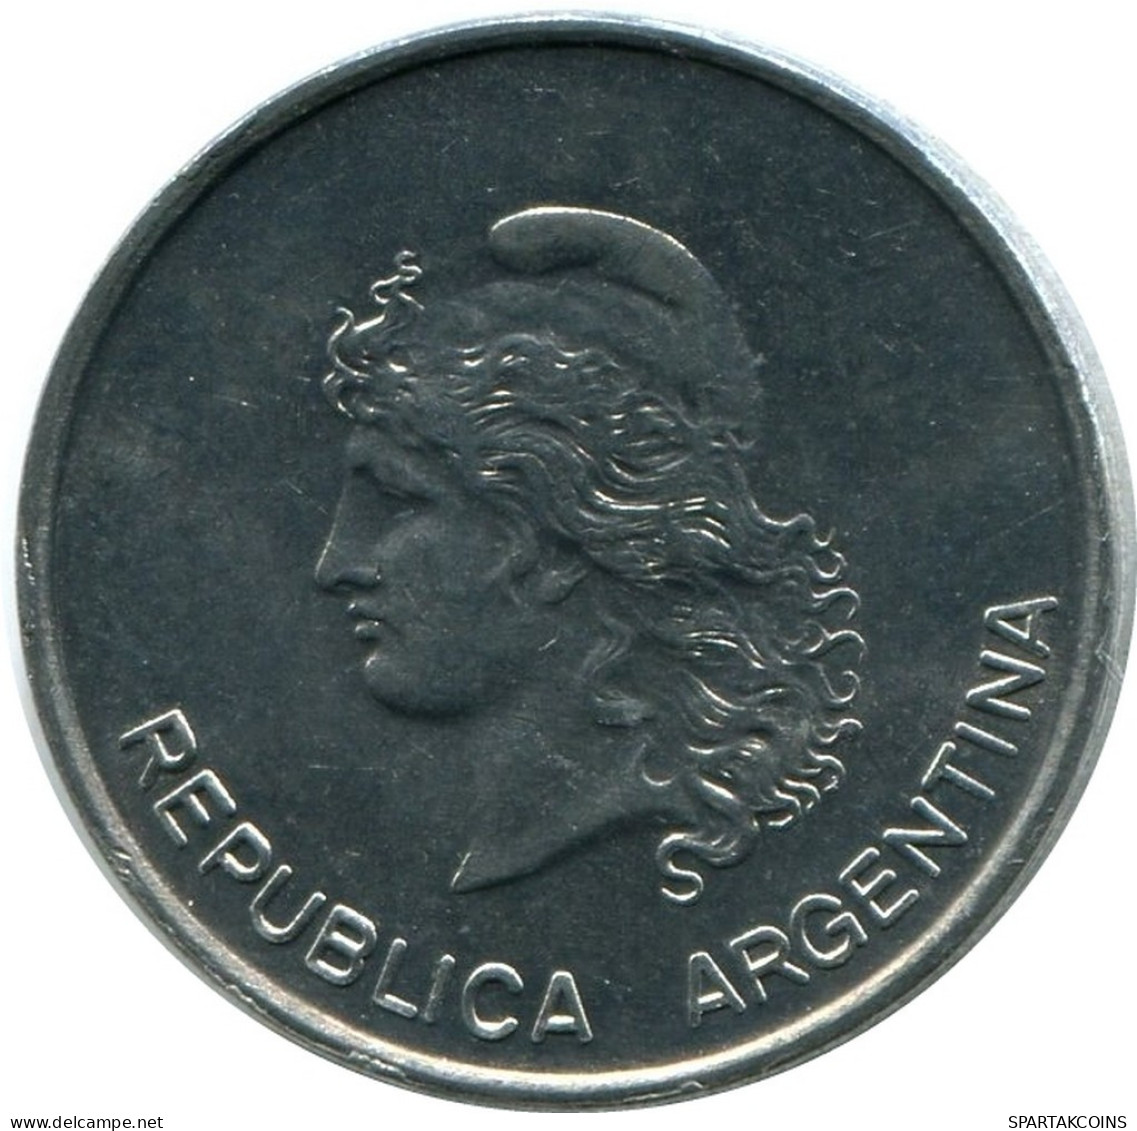 10 CENTAVOS 1983 ARGENTINA Coin UNC #M10337.U.A - Argentine